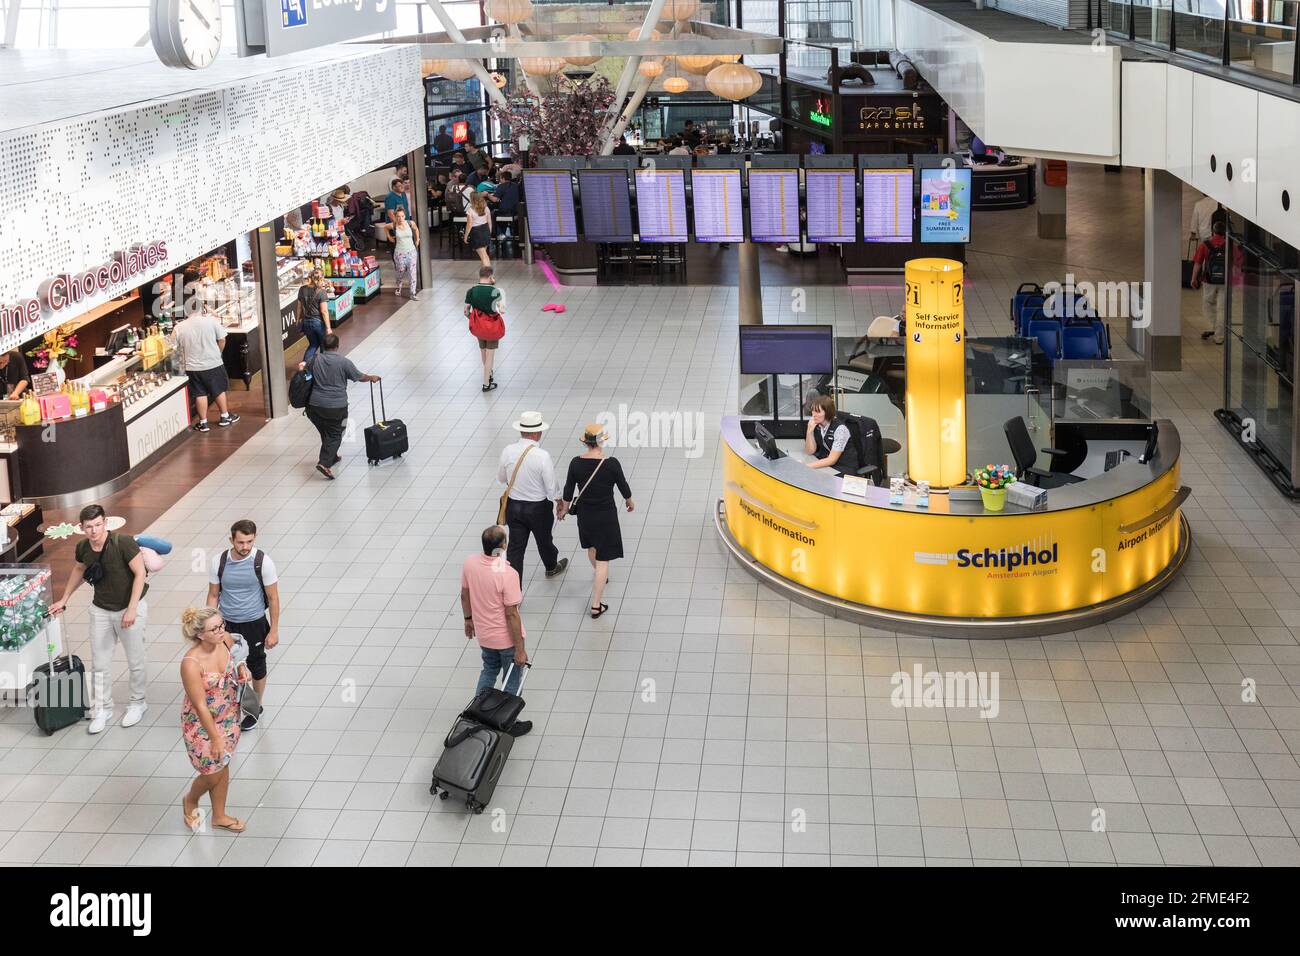 Informationsschalter am Abflughafen Schiphol, Niederlande Stockfoto